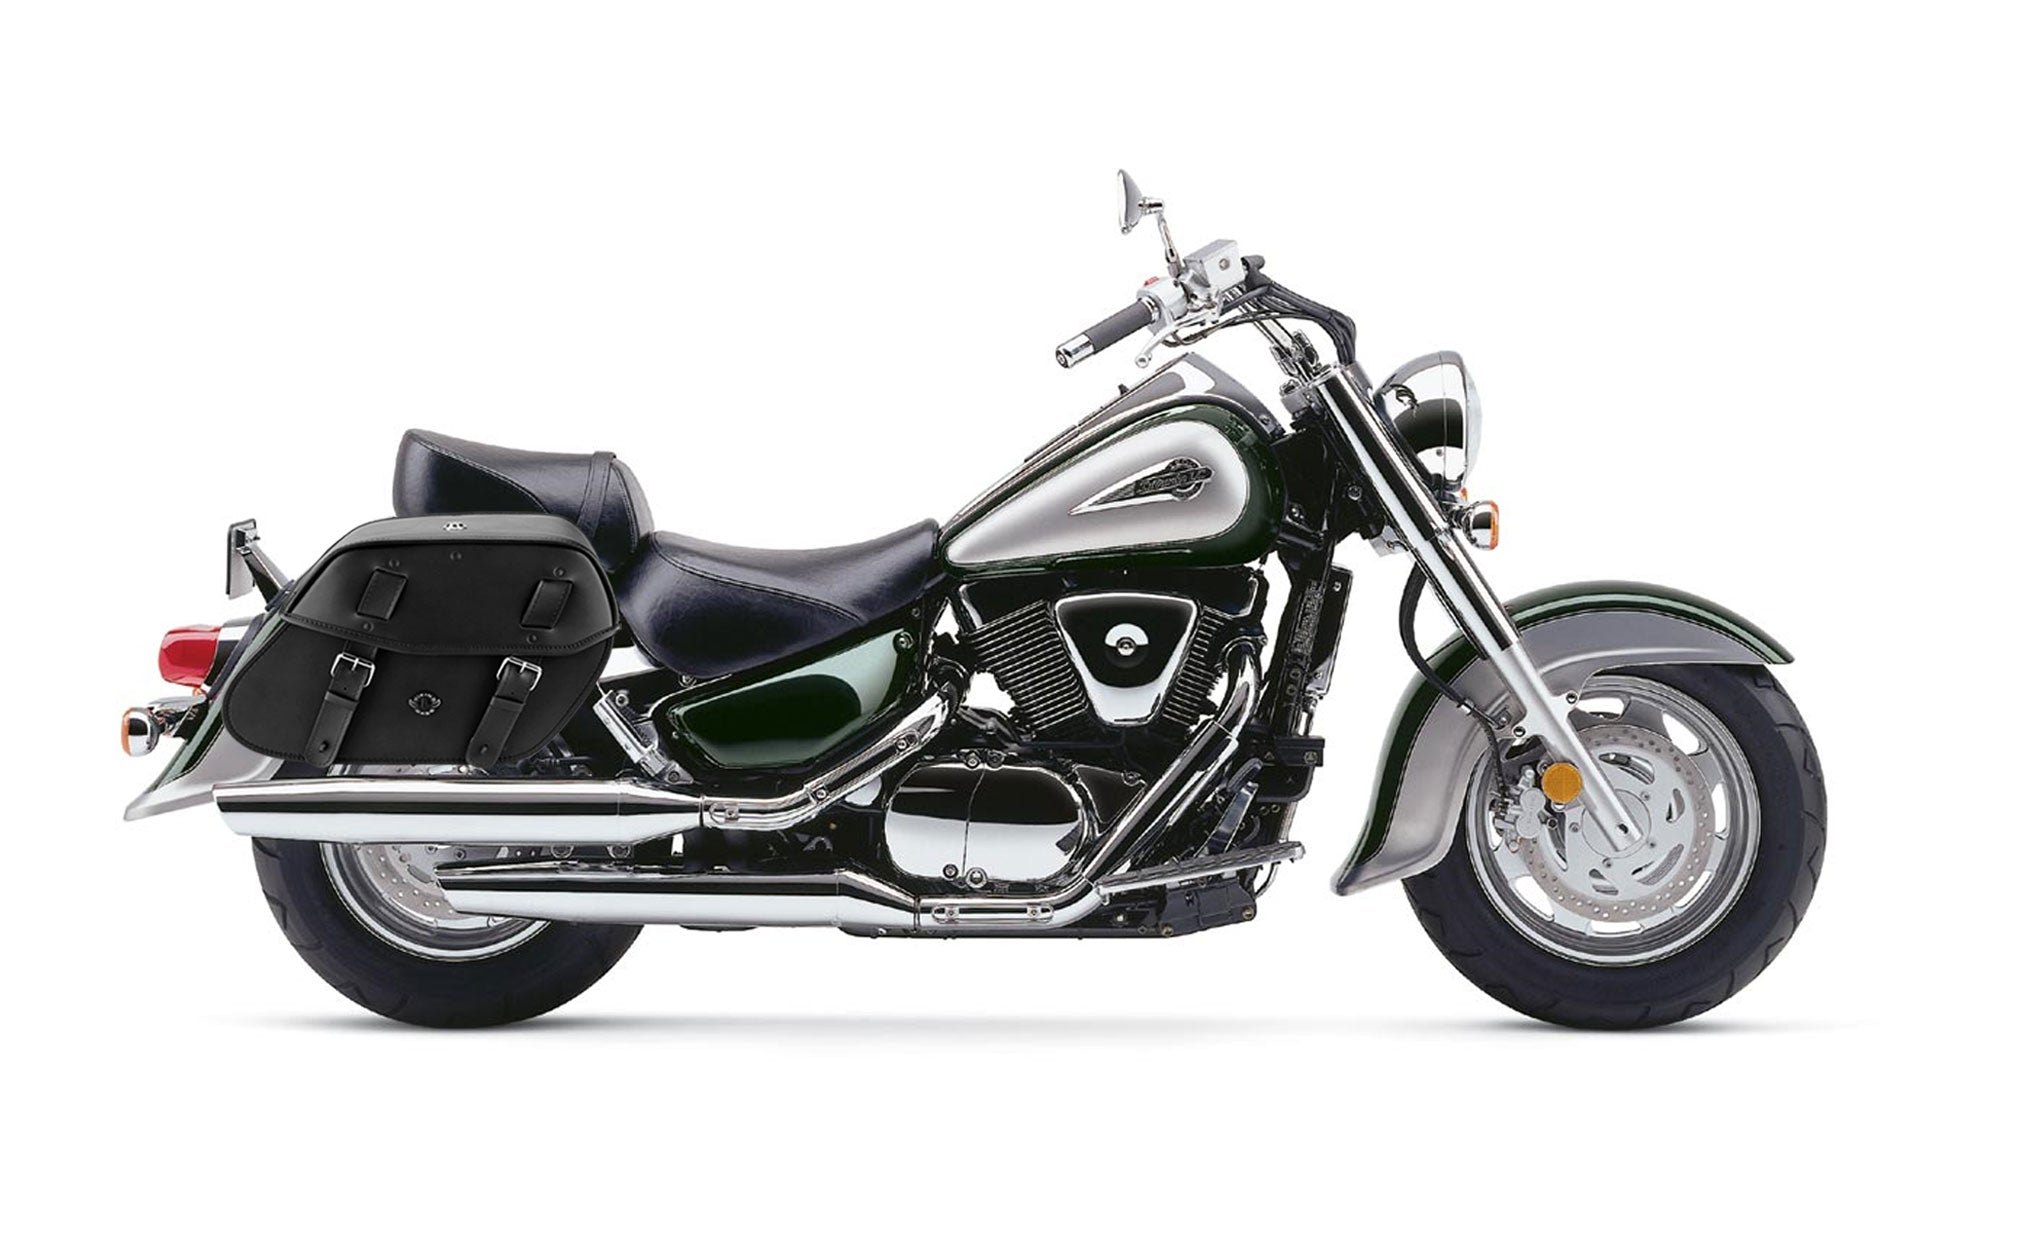 Viking Odin Large Suzuki Intruder 1500 Vl1500 Leather Motorcycle Saddlebags on Bike Photo @expand